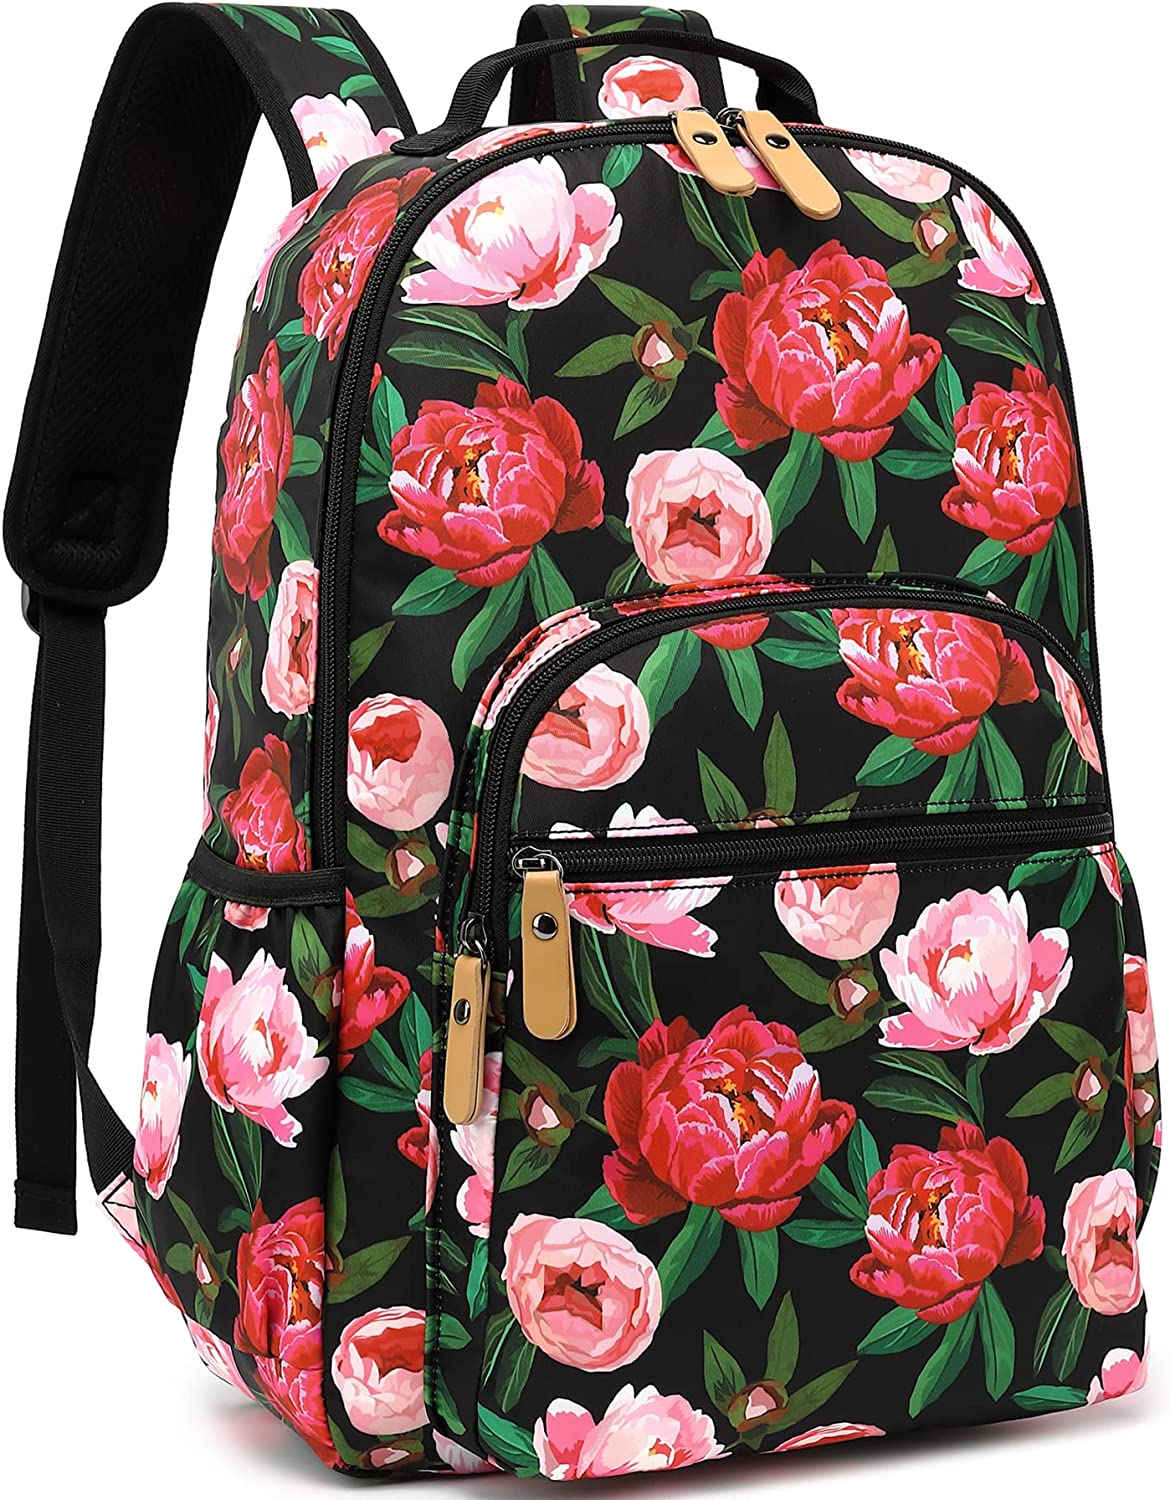 Leaper Water-resistant Floral School Backpack Travel Bag Girls Bookbags Satchel